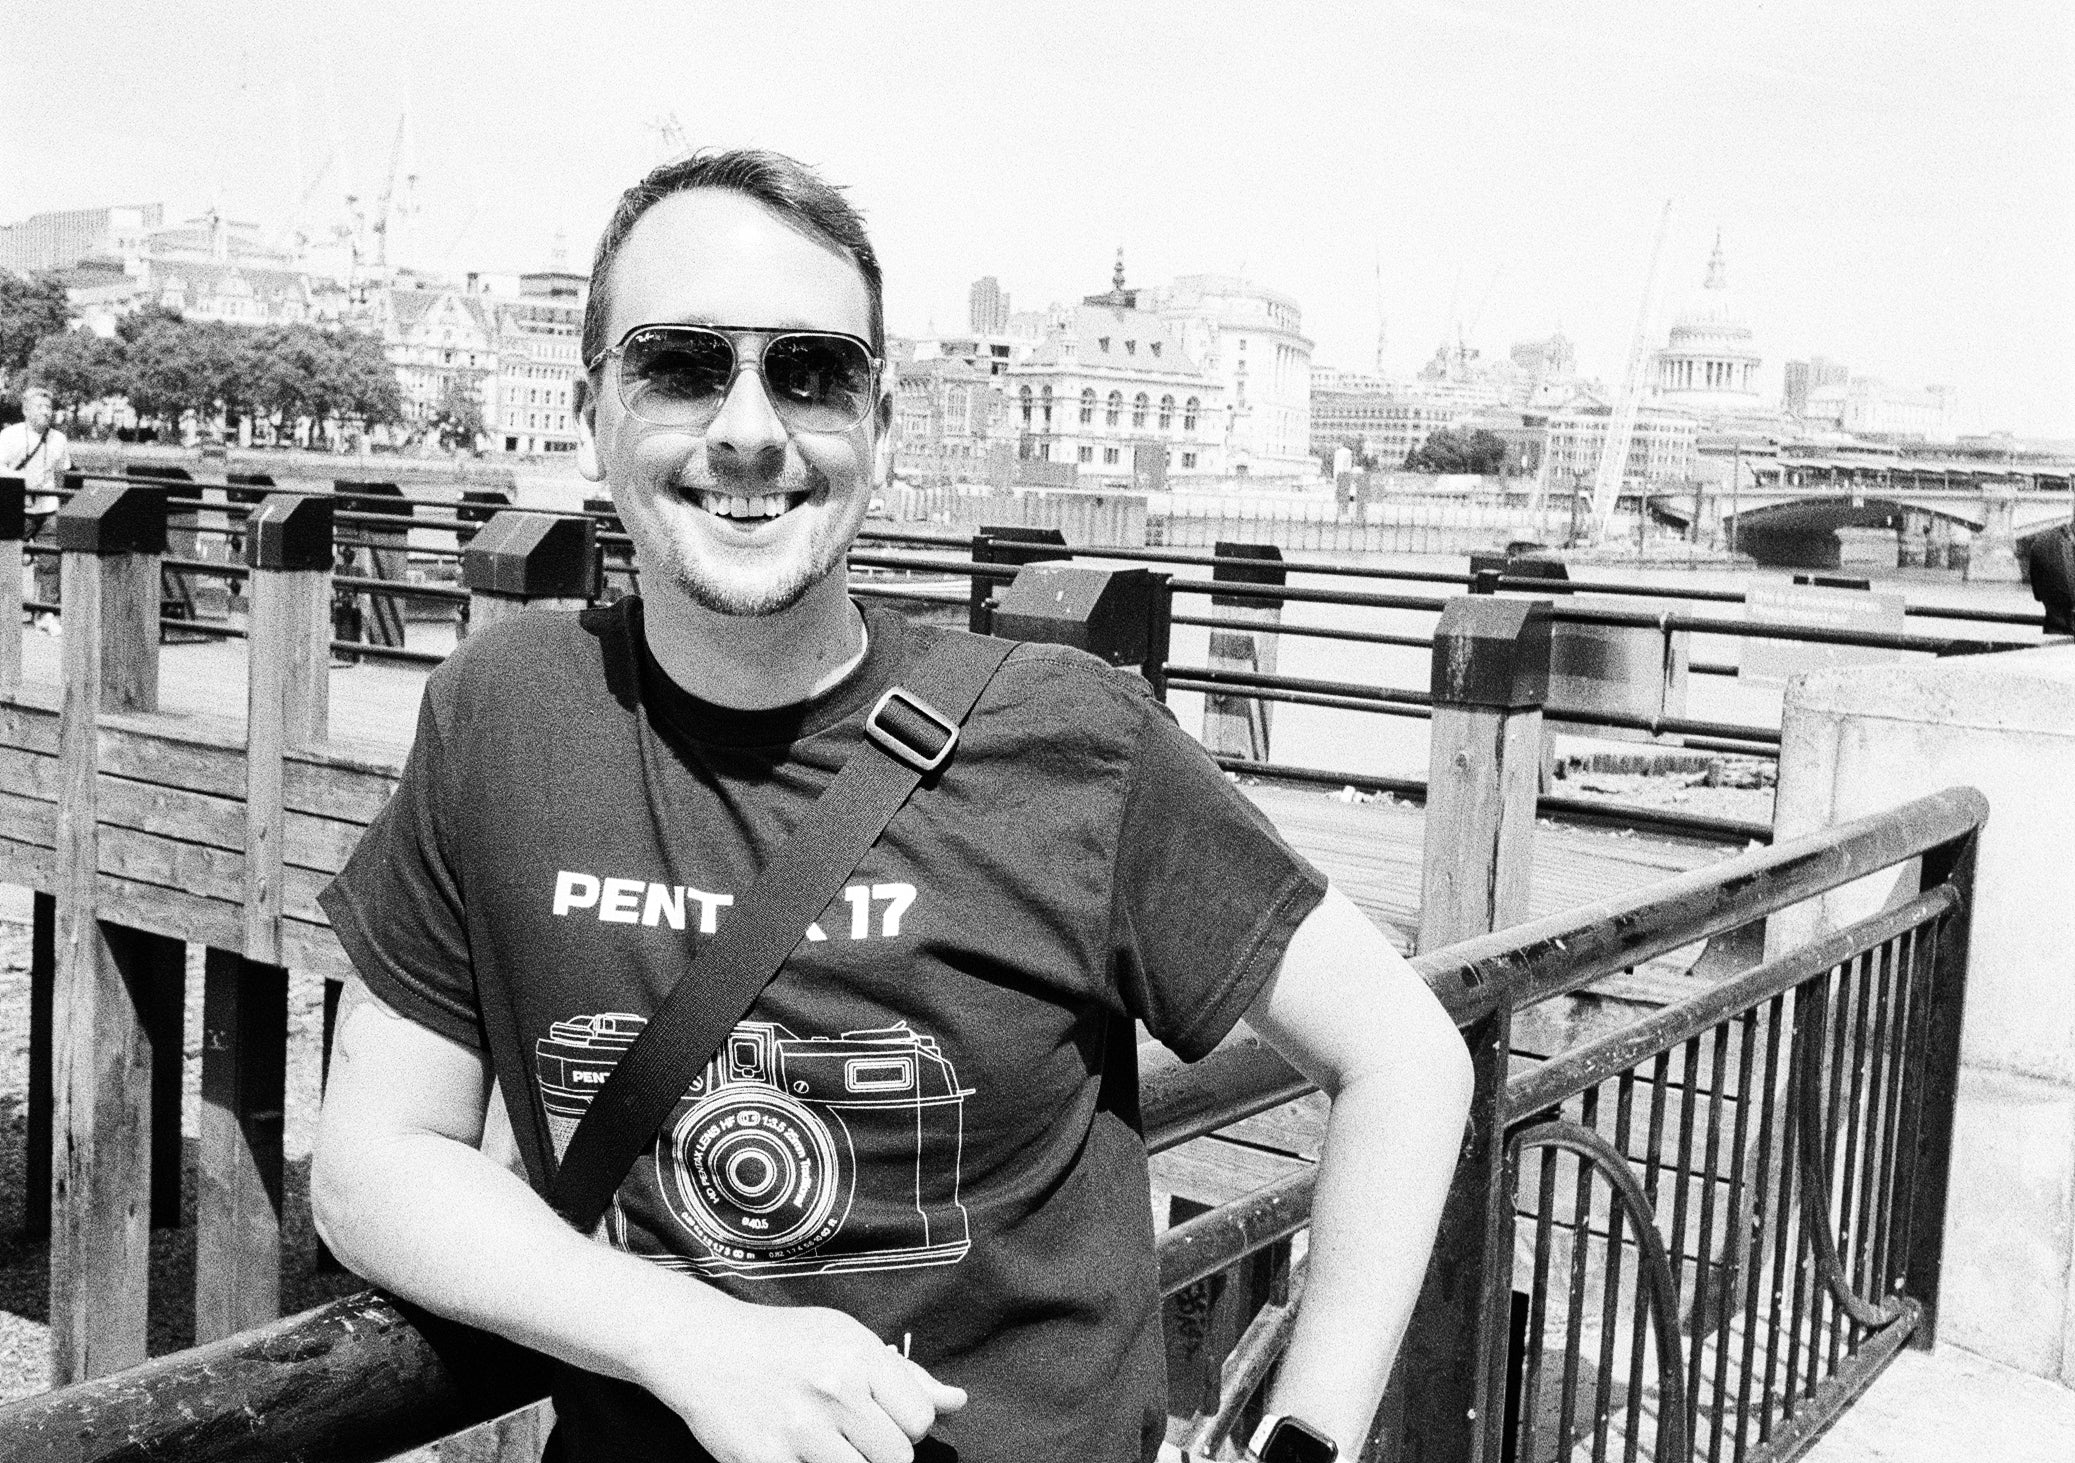 Paul wearing the Pentax 17 T-Shirt